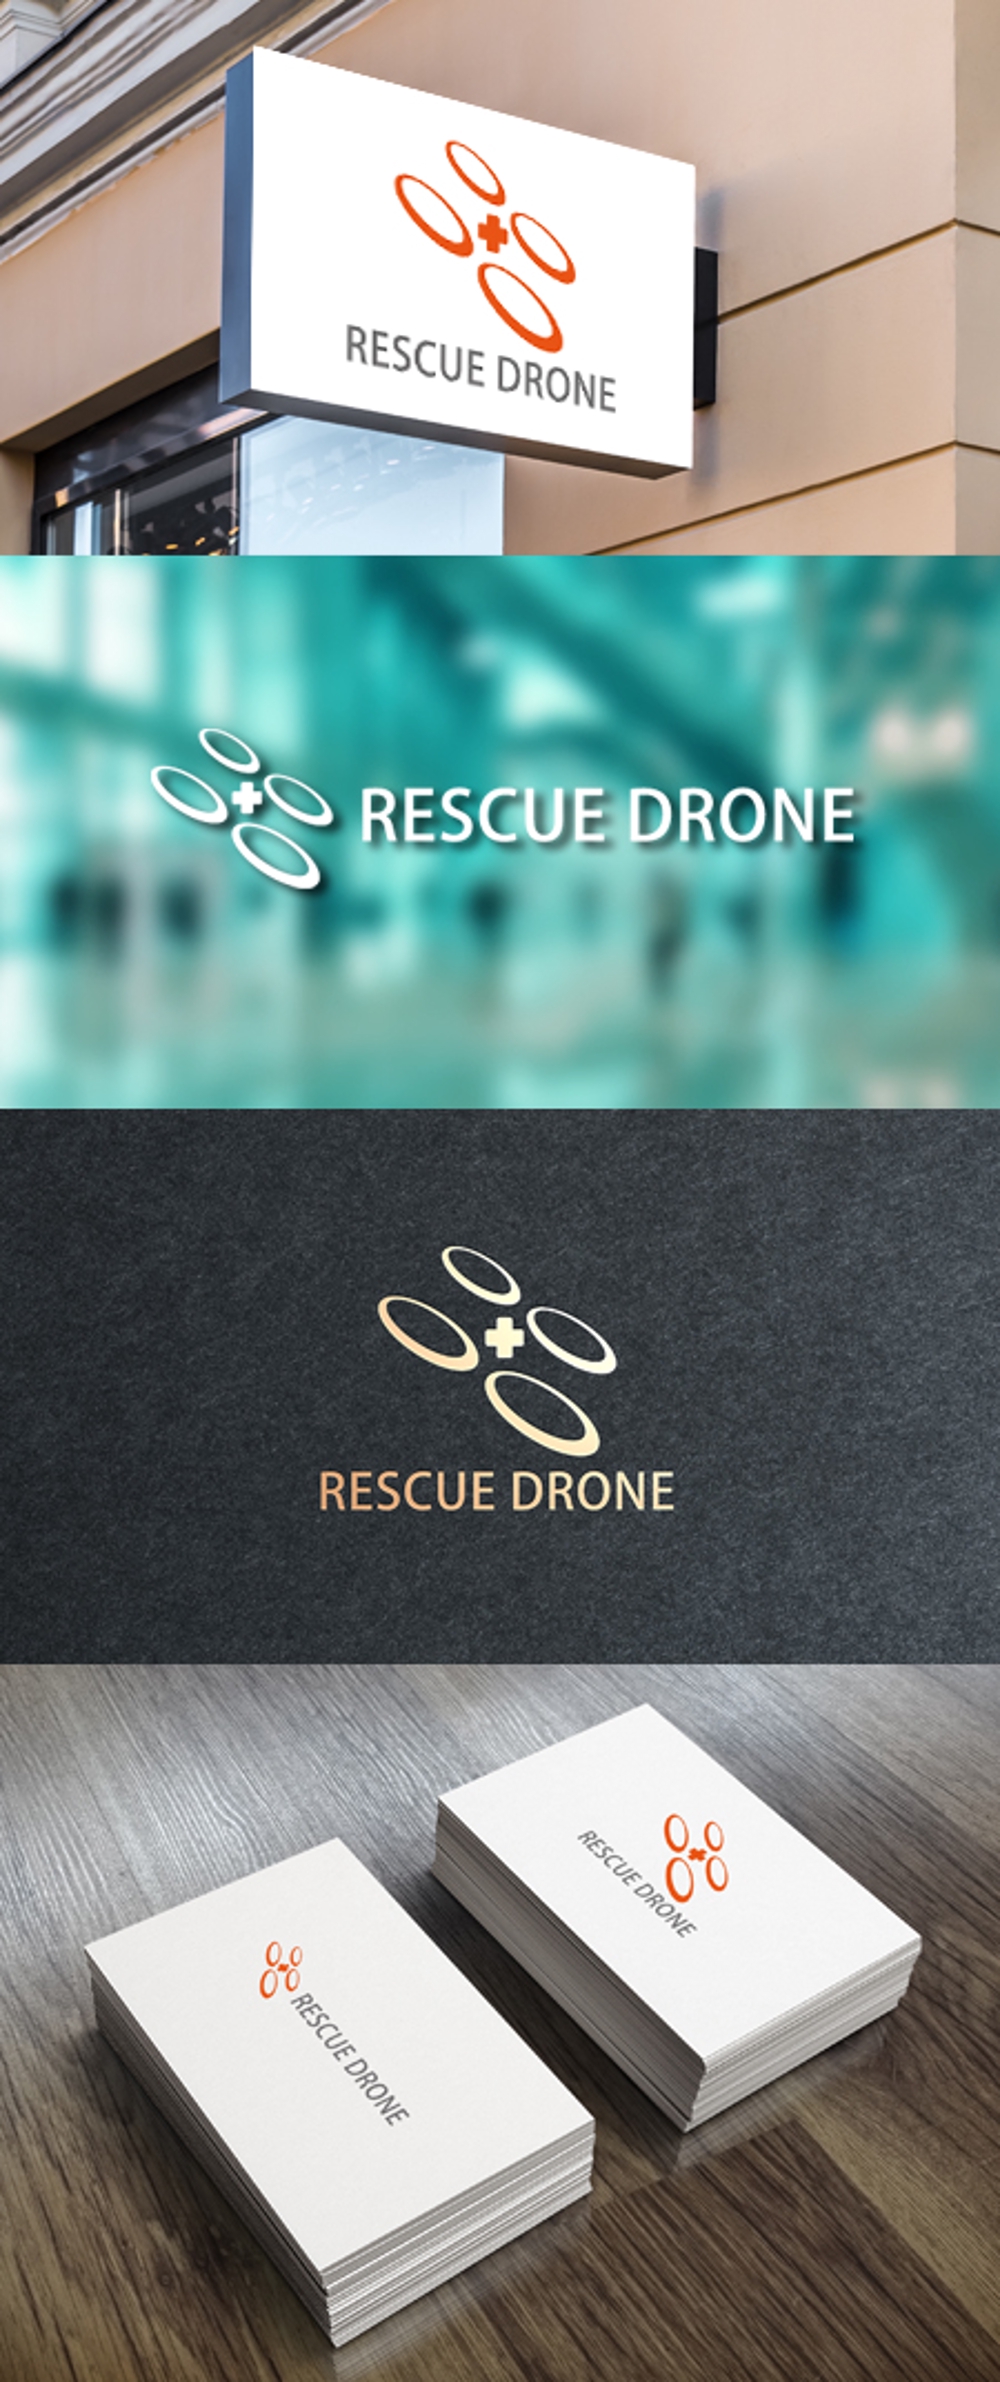 RESCUE DRONE_03.jpg